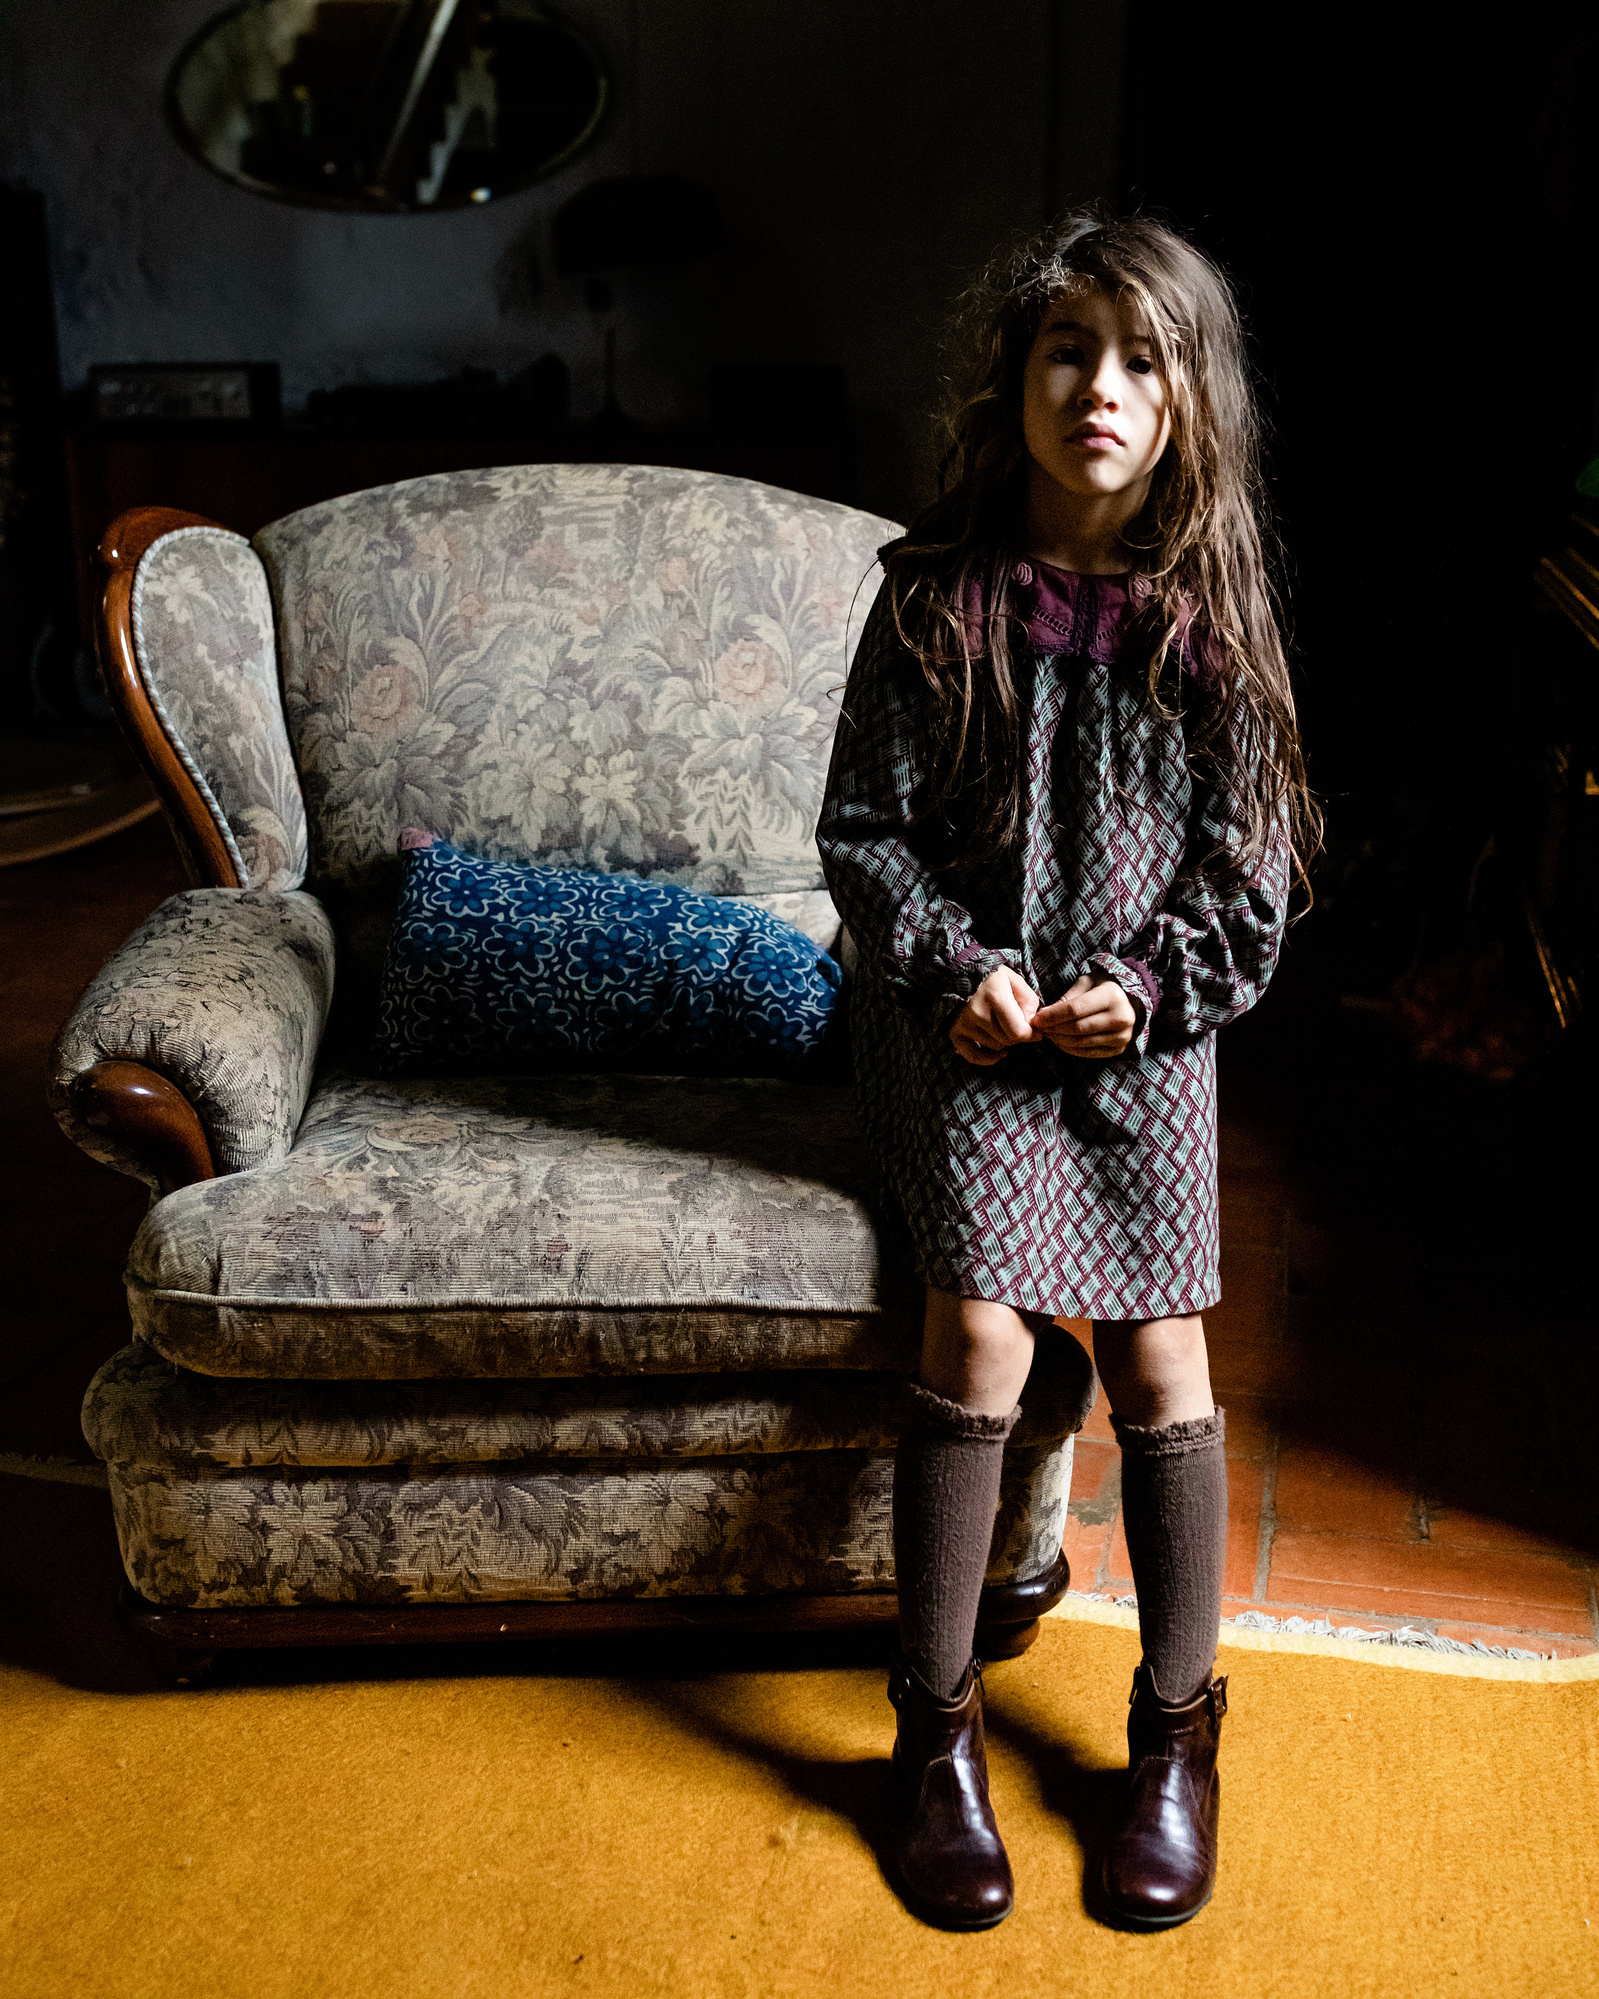 niños jugando en el salón. fotografia para marca de zapatos y alfombras. 
Manuela Franjou fashion and branding photography